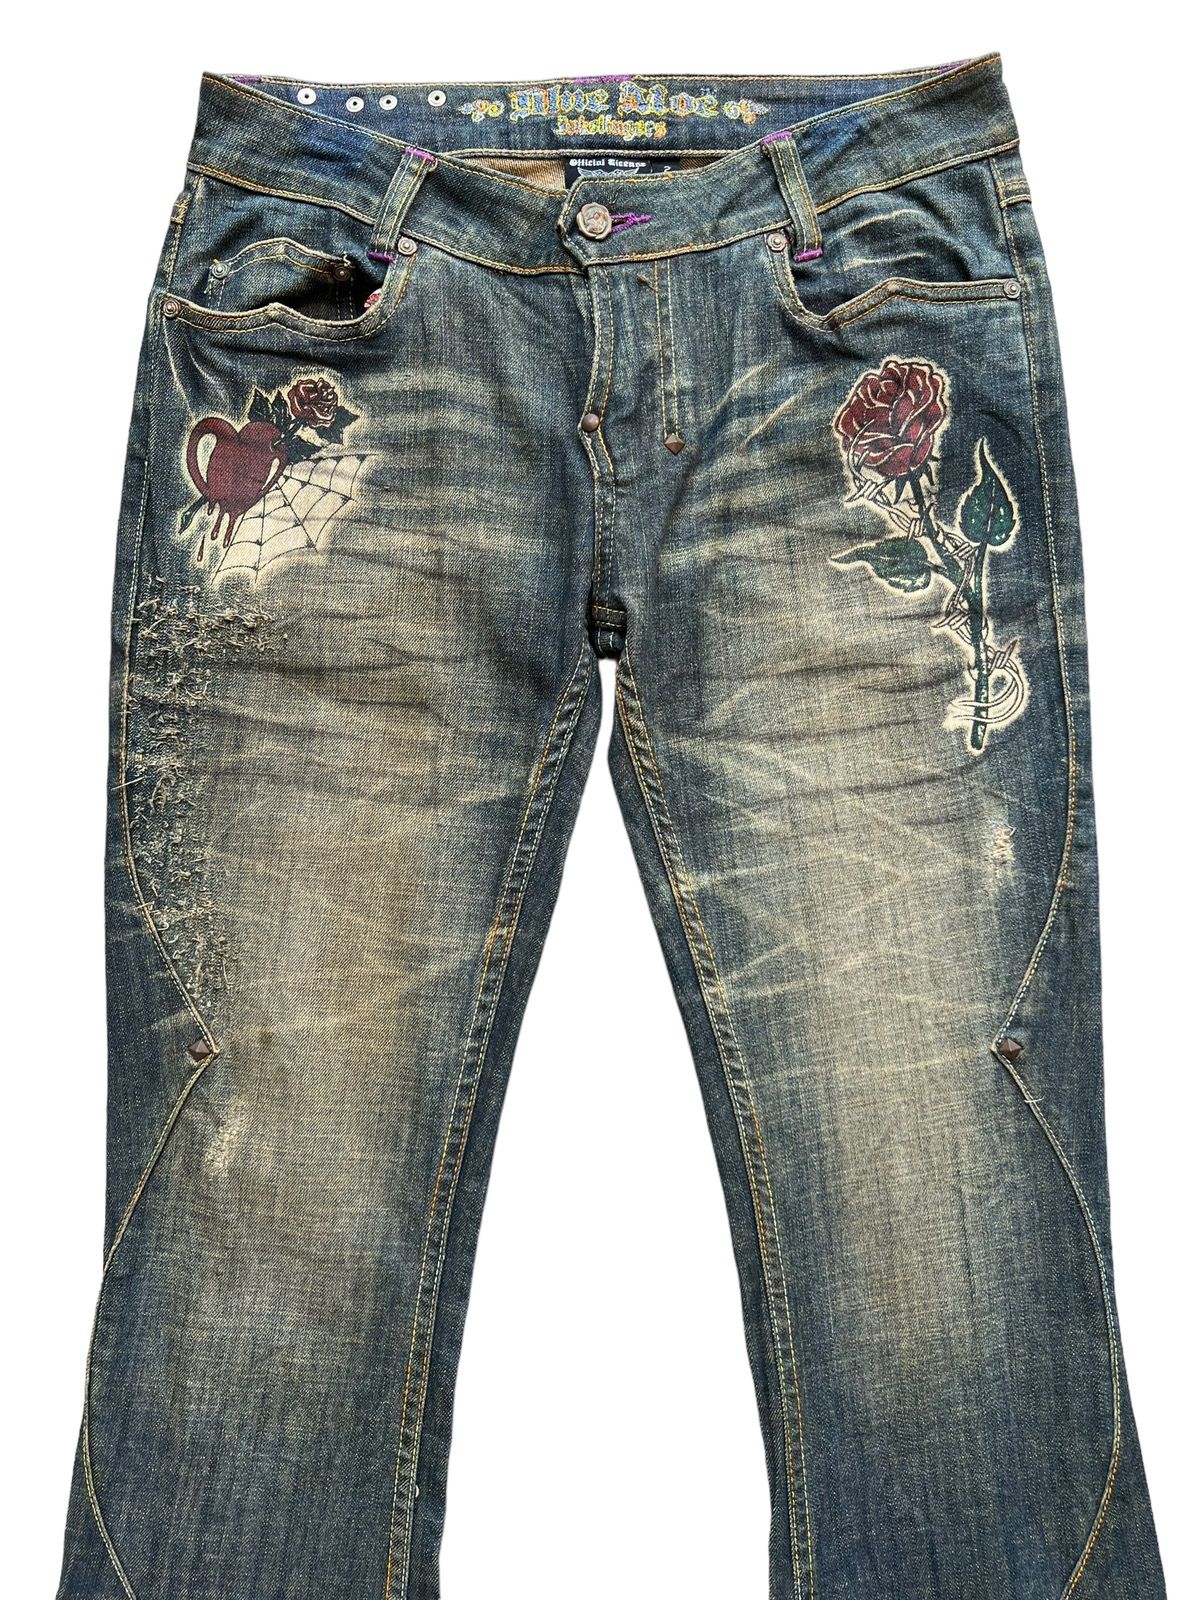 Archival Clothing - Vintage Gotchic Bones Mudwash Punk Flare Denim Jeans 28x33 - 4